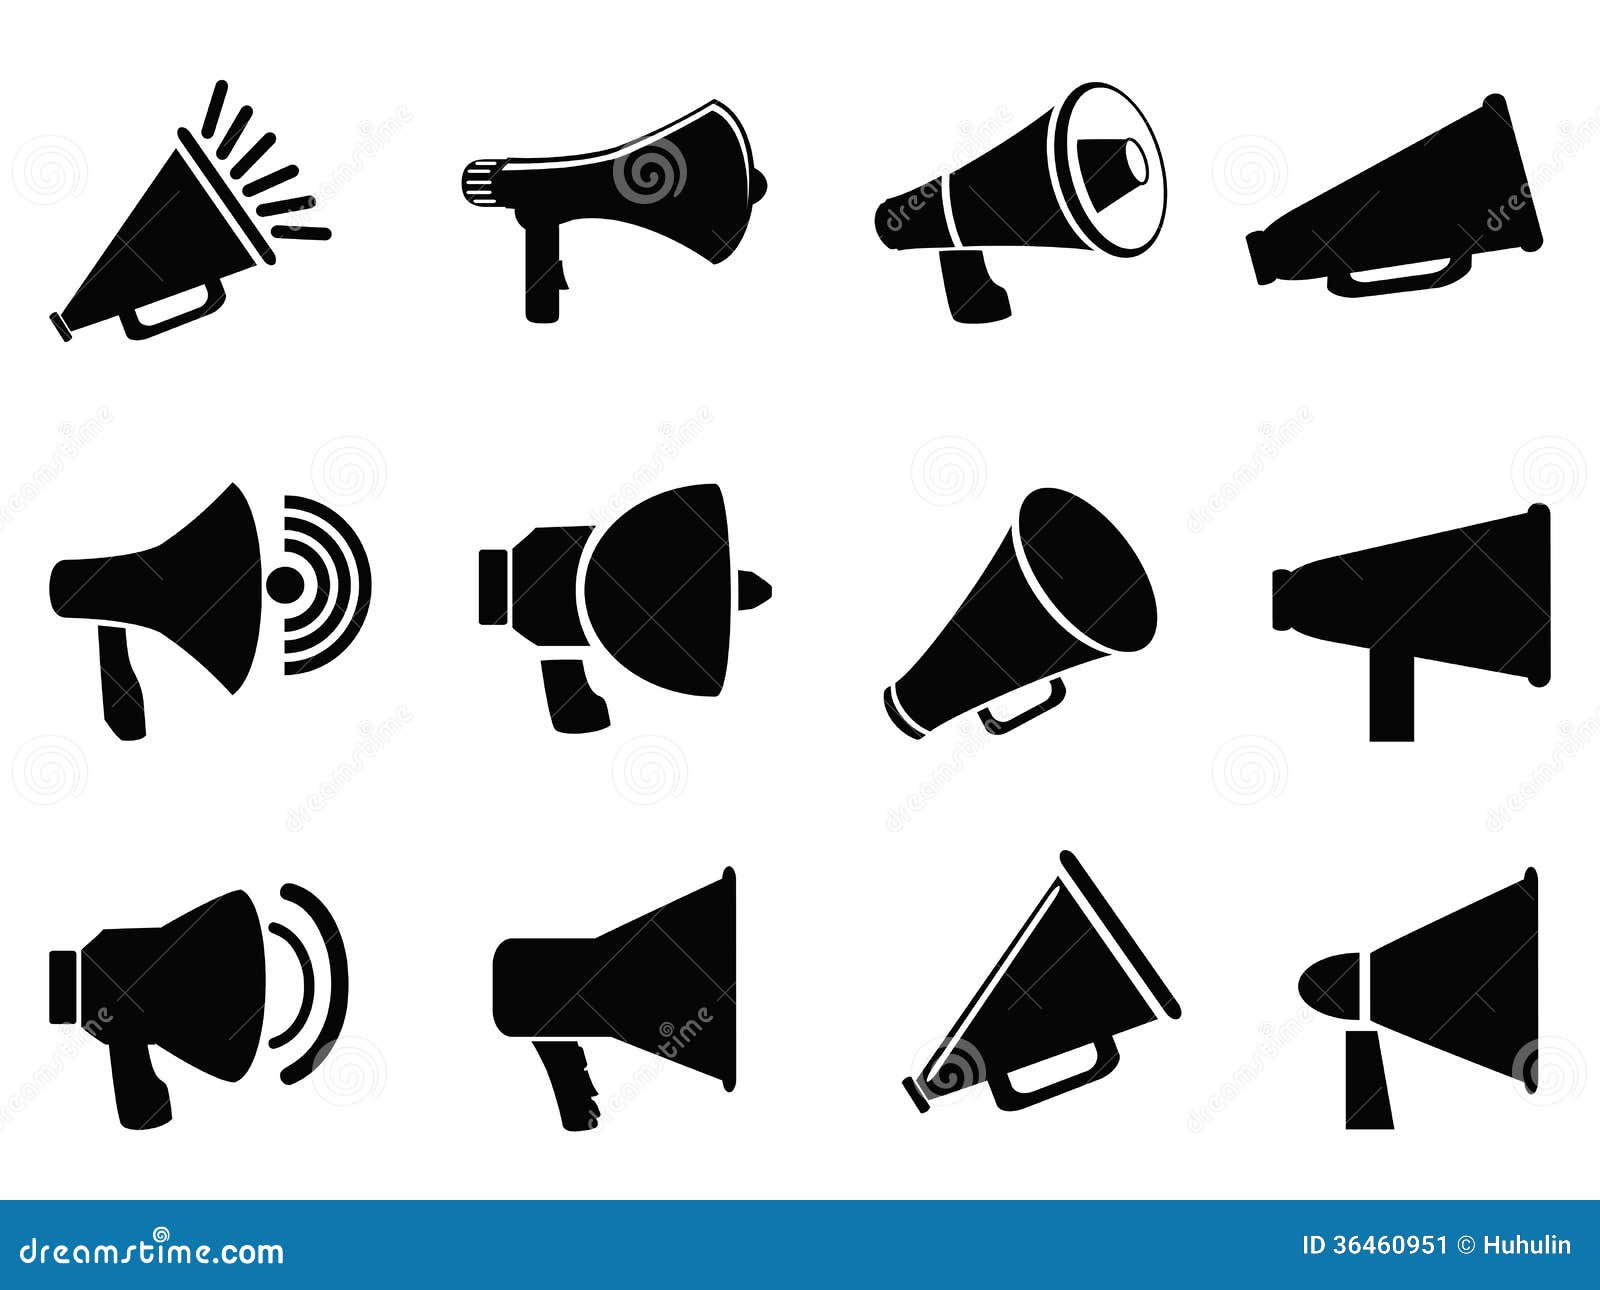 megaphone icons